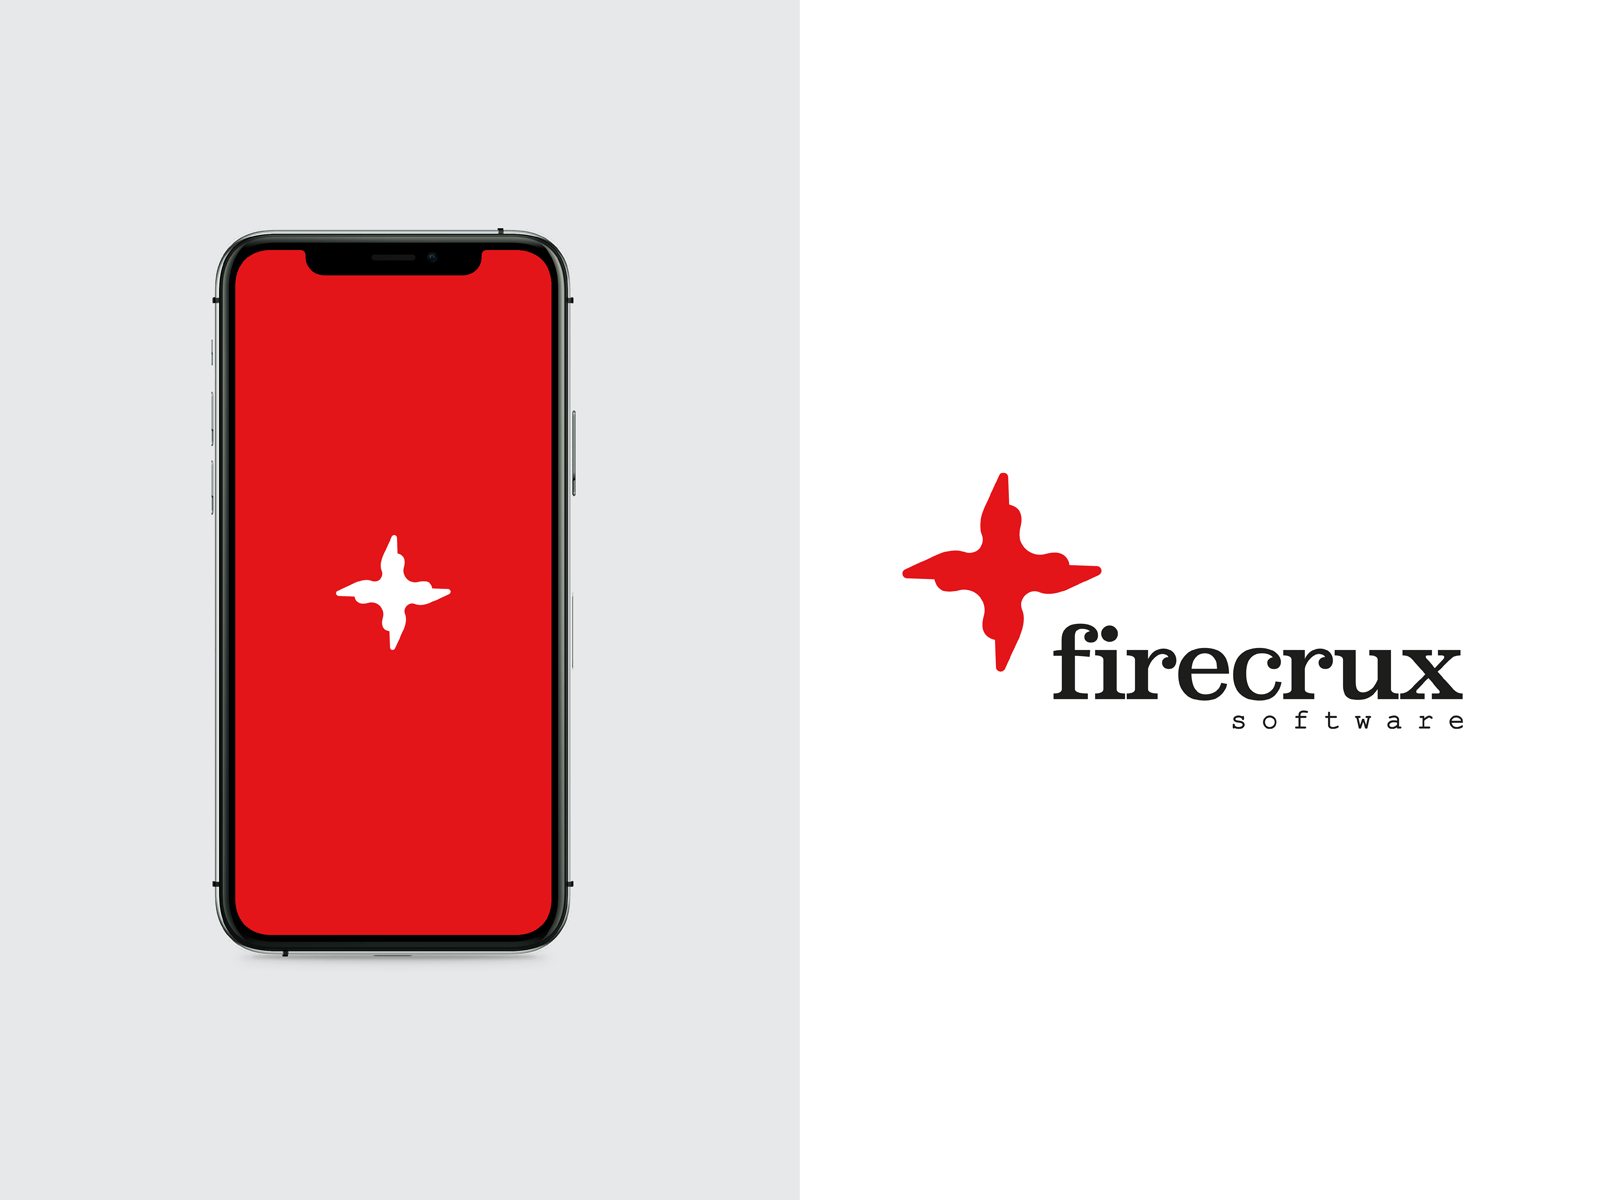 firecrux software